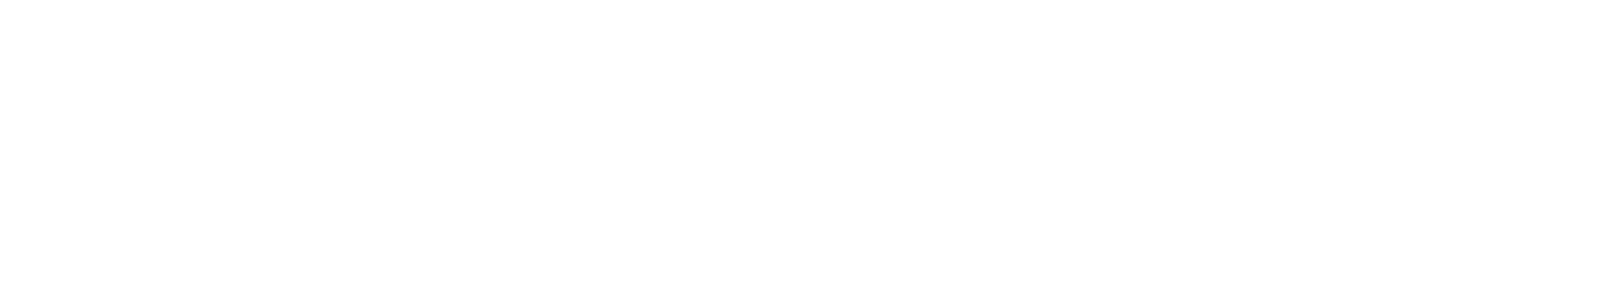 Janus Henderson logo large for dark backgrounds (transparent PNG)